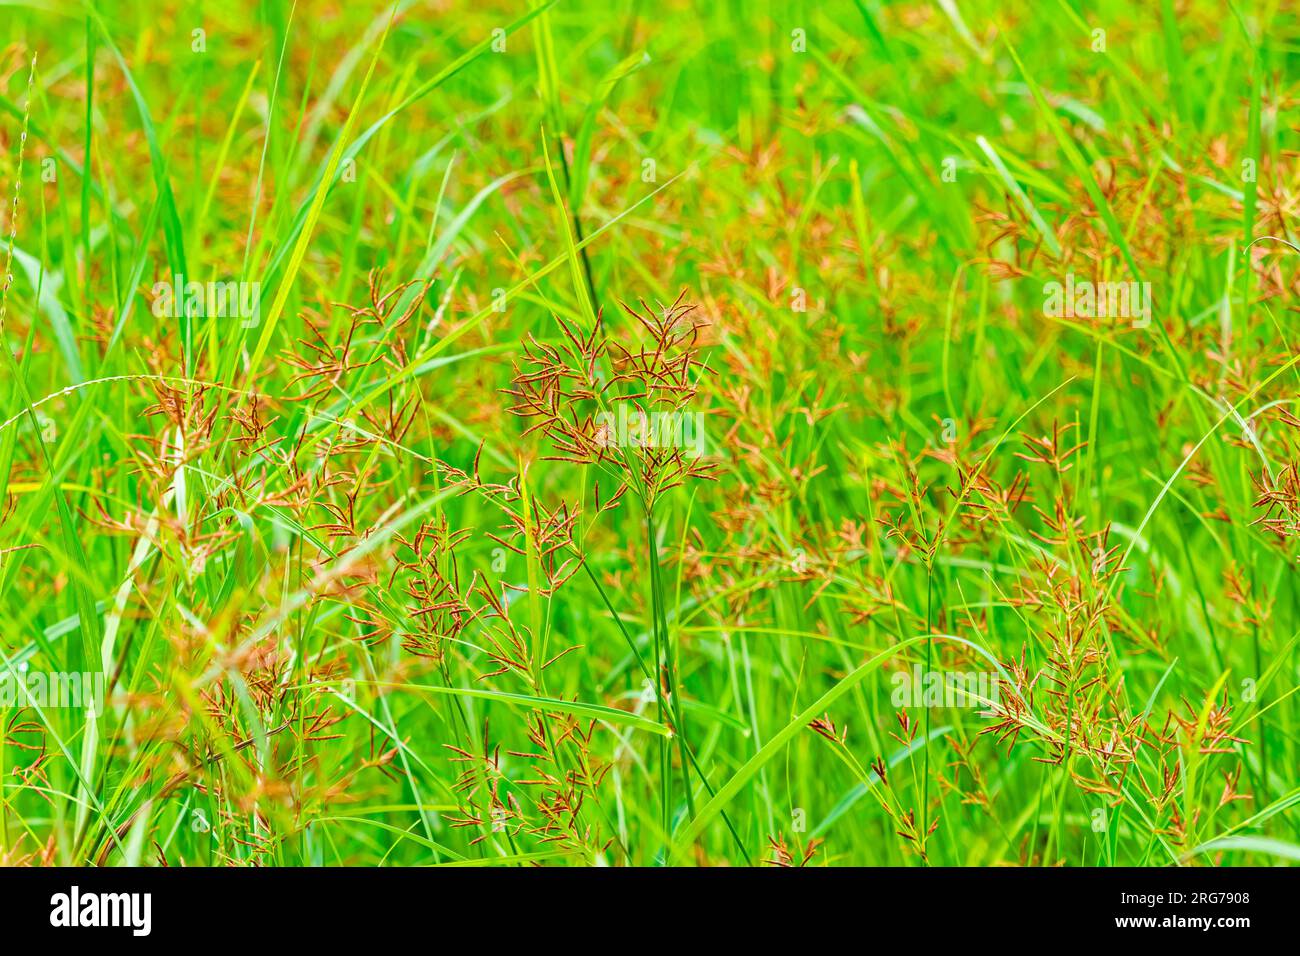 Ländliche Szene mit blühenden wilden Grasblumen mit grünen Blättern auf dem Feld in der Frühlingssaison, Nahaufnahme. Horizontales Format. Stockfoto